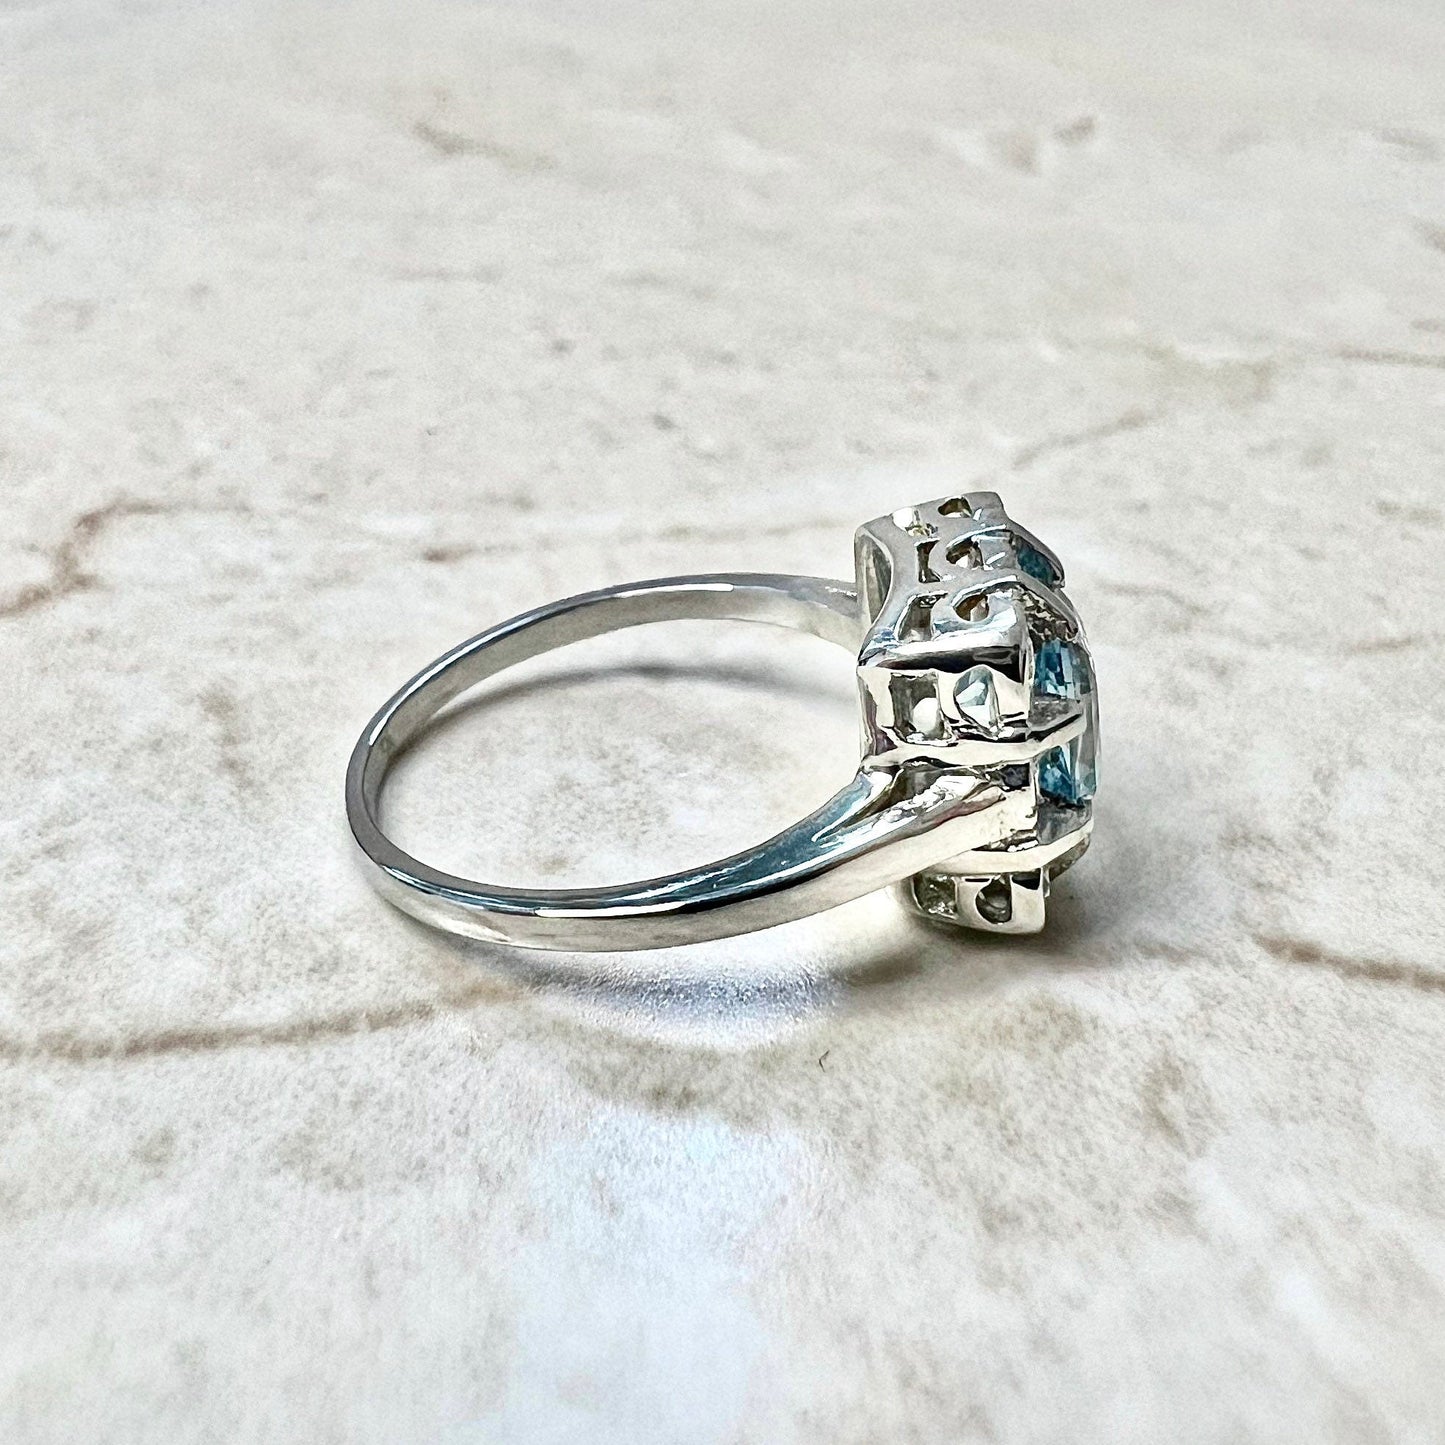 Art Deco Style Platinum Diamond & Aquamarine Halo Ring - Vintage Style Aquamarine Ring - Halo Aquamarine Ring - Aquamarine Engagement Ring